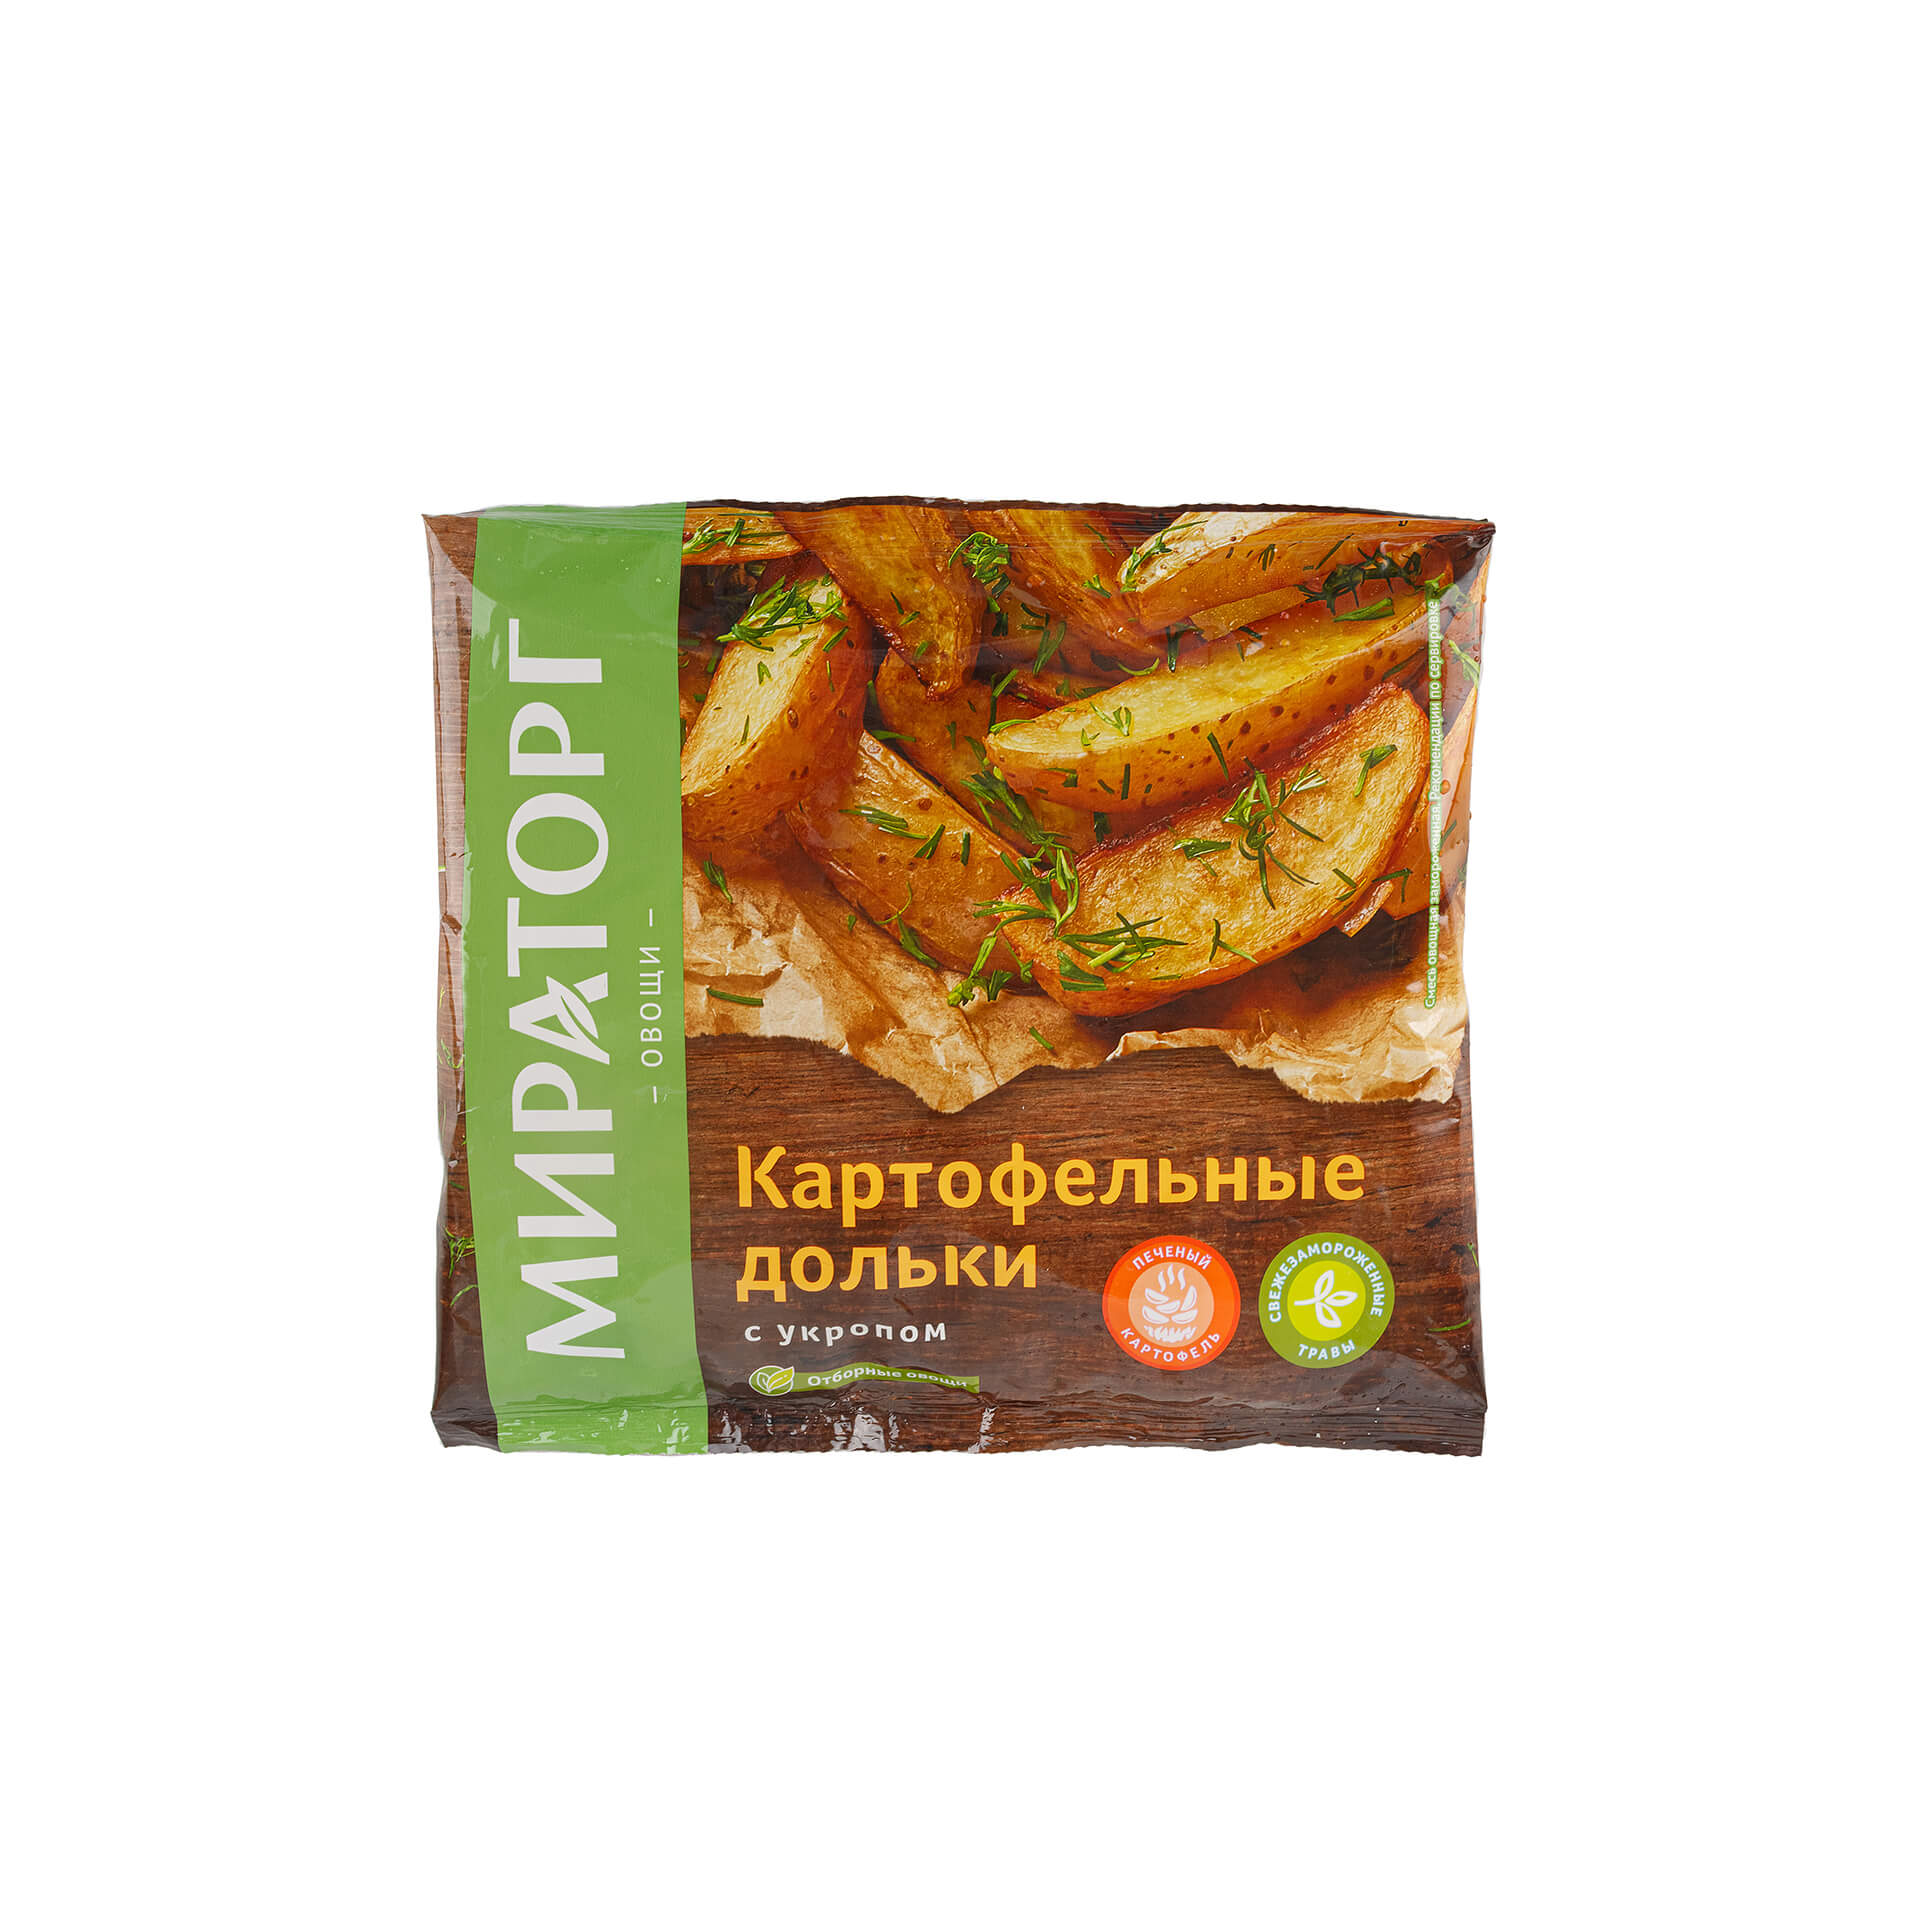 Замороженные картофельные дольки с укропом для жарки и запекания Мираторг 400 г 8794LED, общий вид, купить оптом с доставкой по москве и московской области, недорого, низкая цена